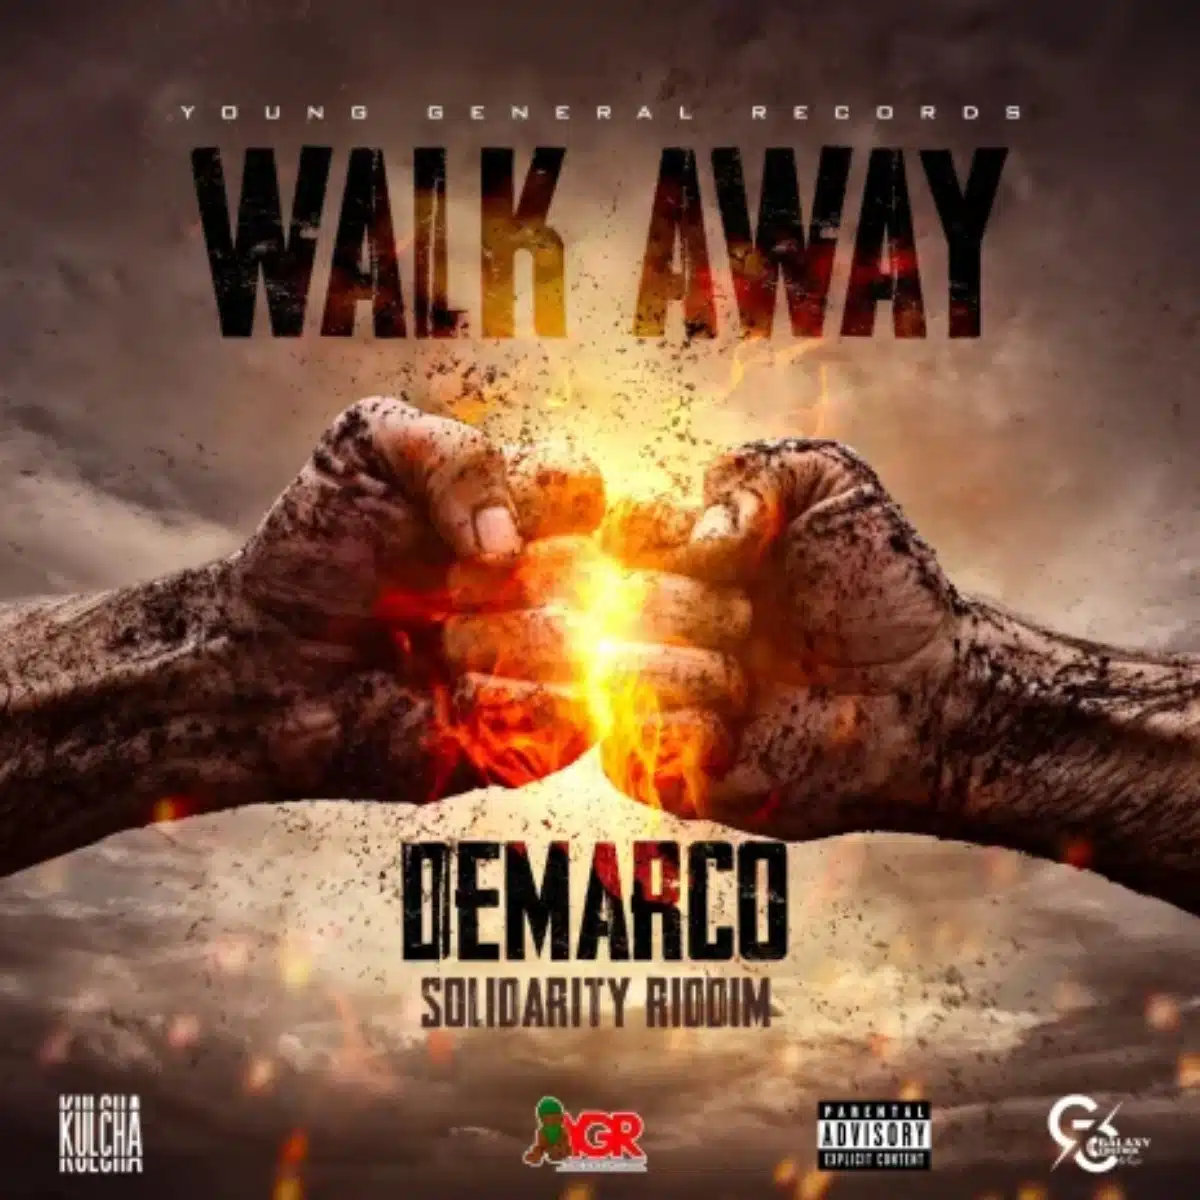 DOWNLOAD: Demarco – “Walk Away” (Video & Audio) Mp3